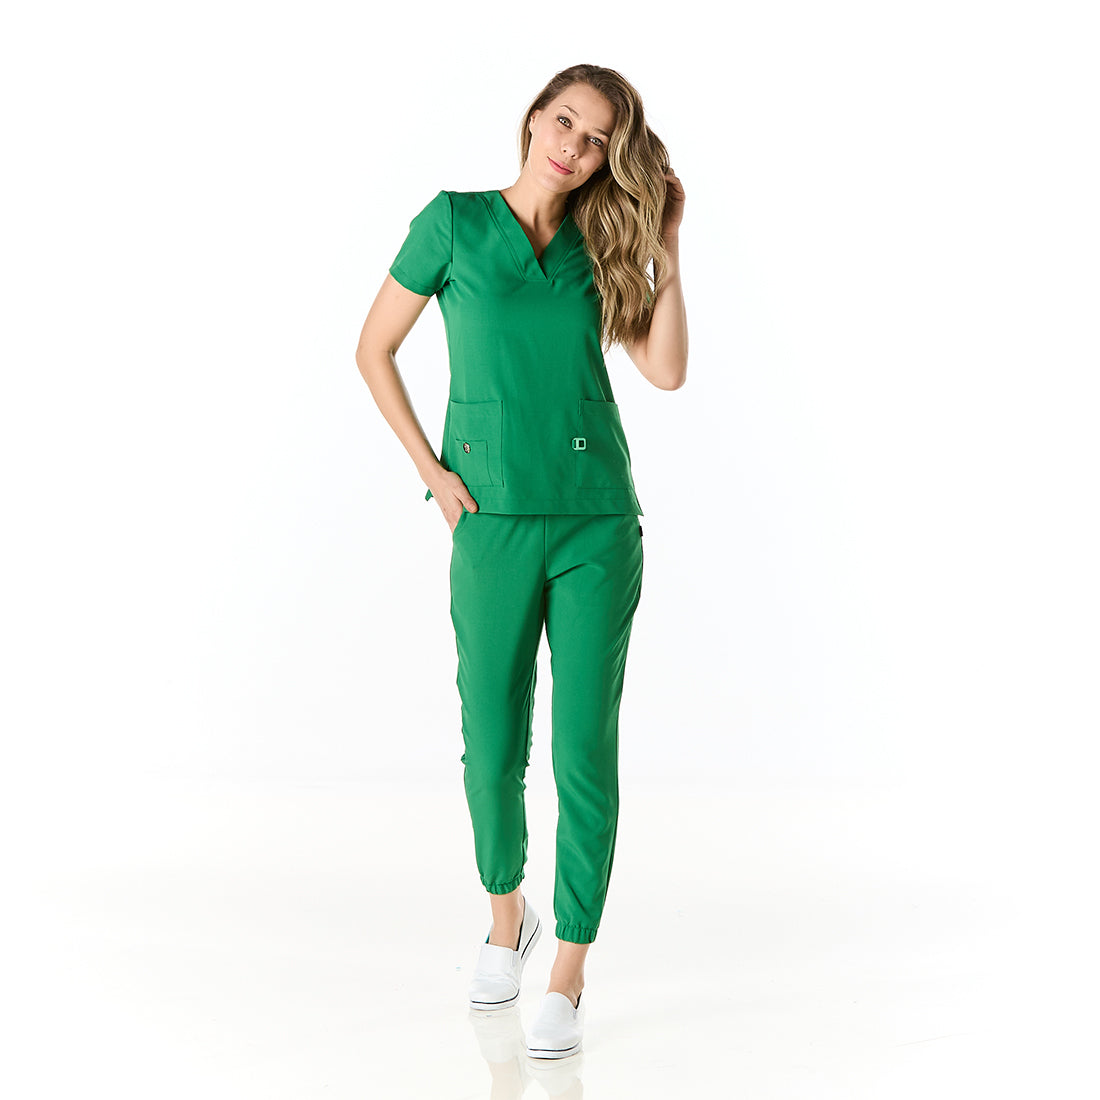 Mujer vistiendo pijama sanitario color verde perico con cuello en v y pantalon tipo jogger - frontal